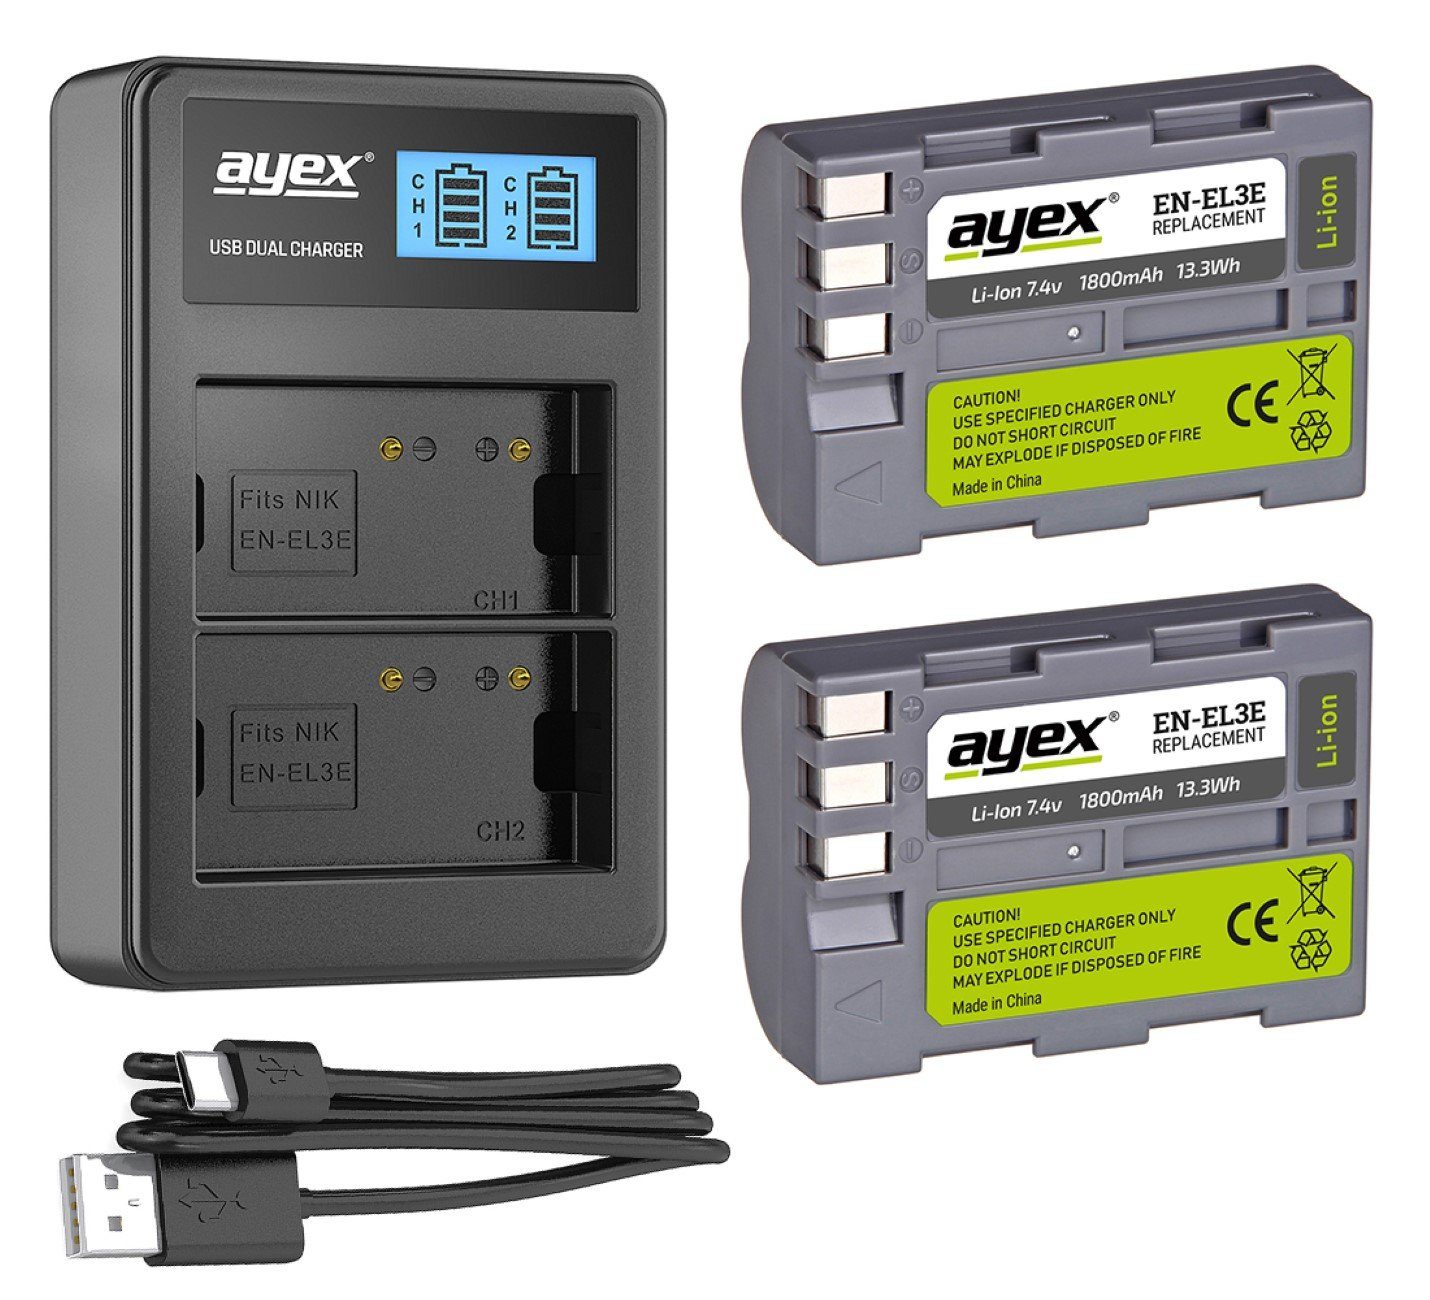 ayex Kamera-Akku Akku Dual-Ladegerät x ayex für ayex USB EN-EL3e u.1 x 2 Nikon